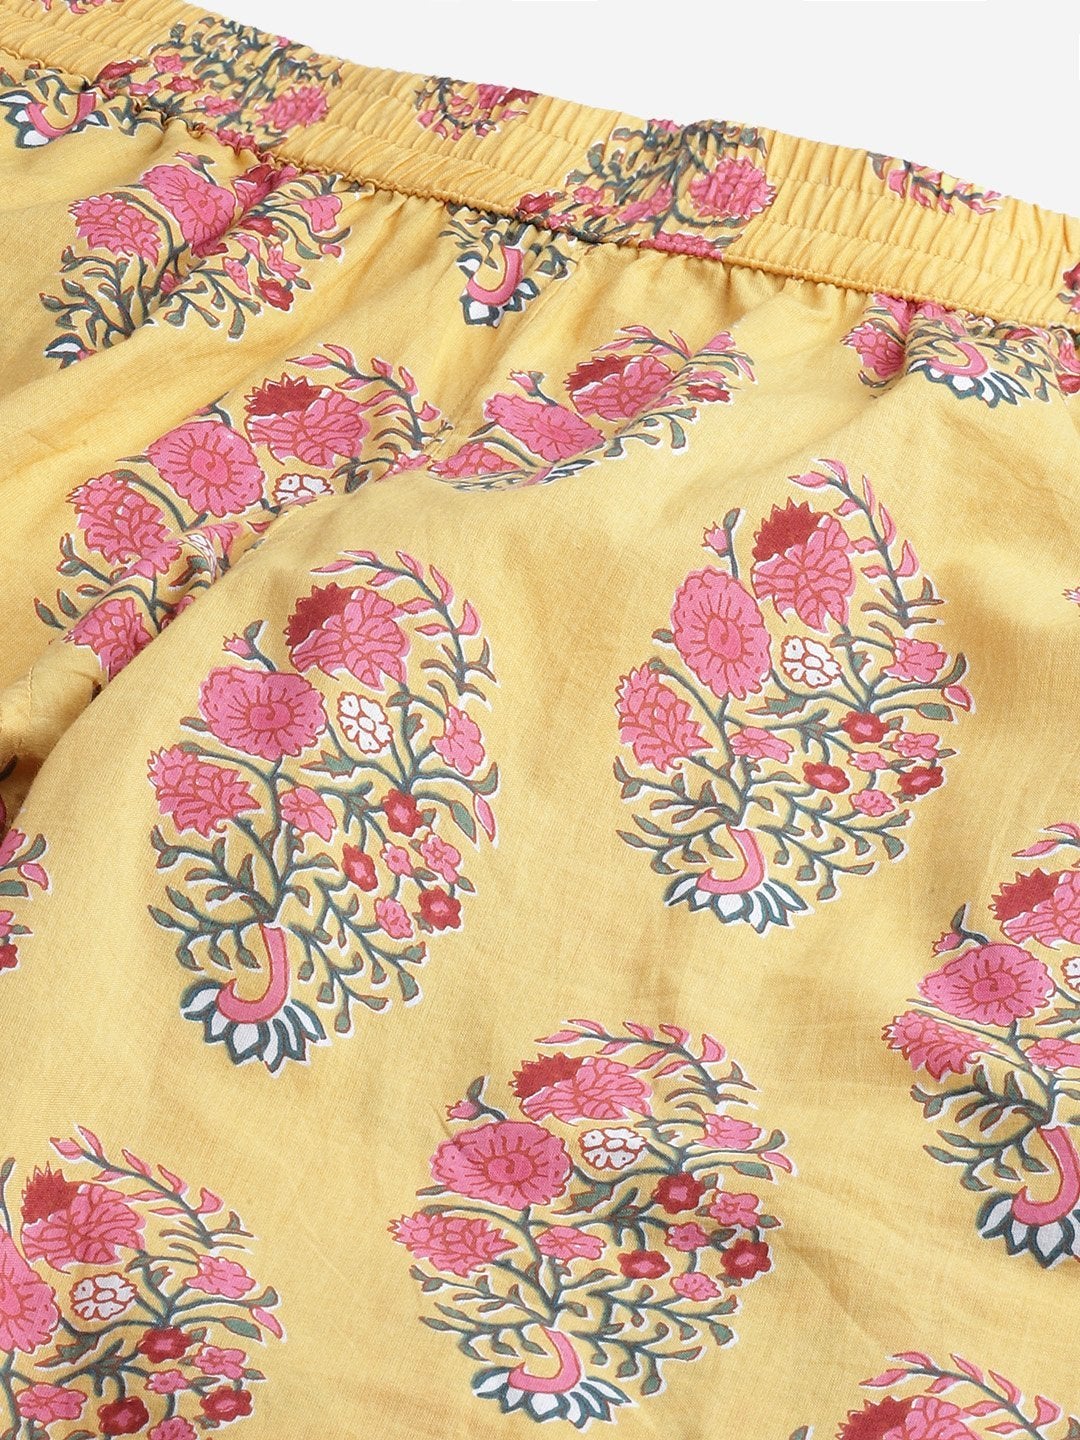 Women's The Dressify Yellow Flower Cotton Motif Nightwear - Divena